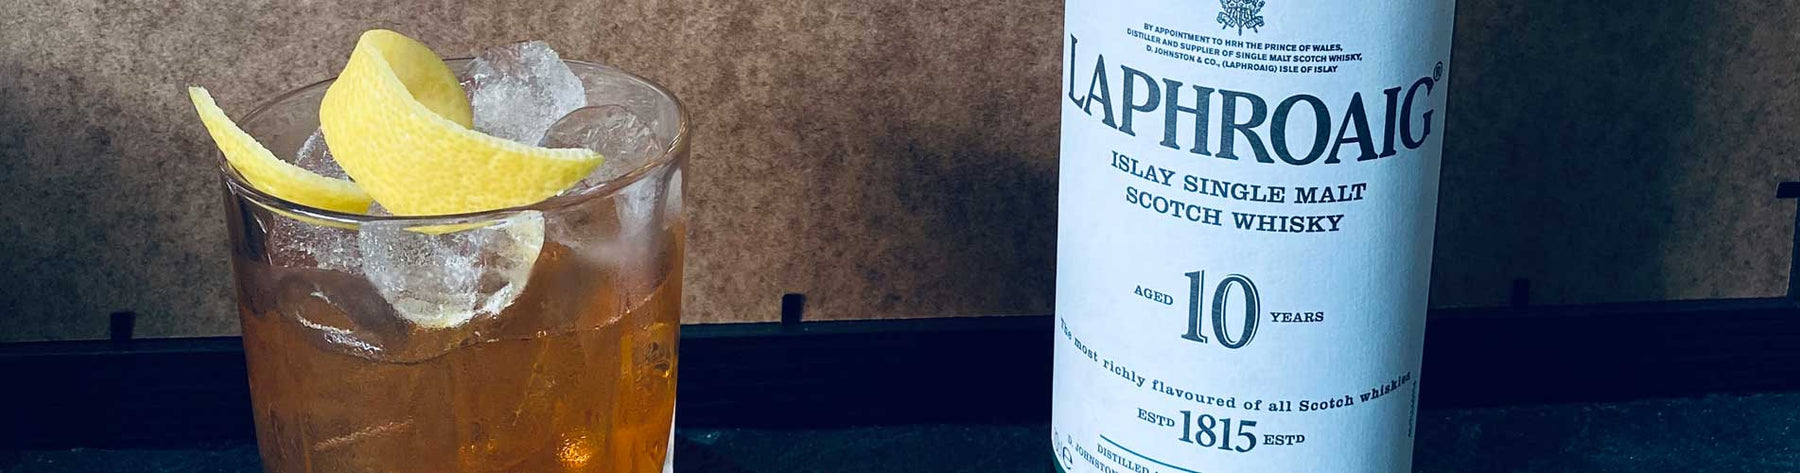 Laphroaig Whisky Laver Salt Old Fashioned Cocktail